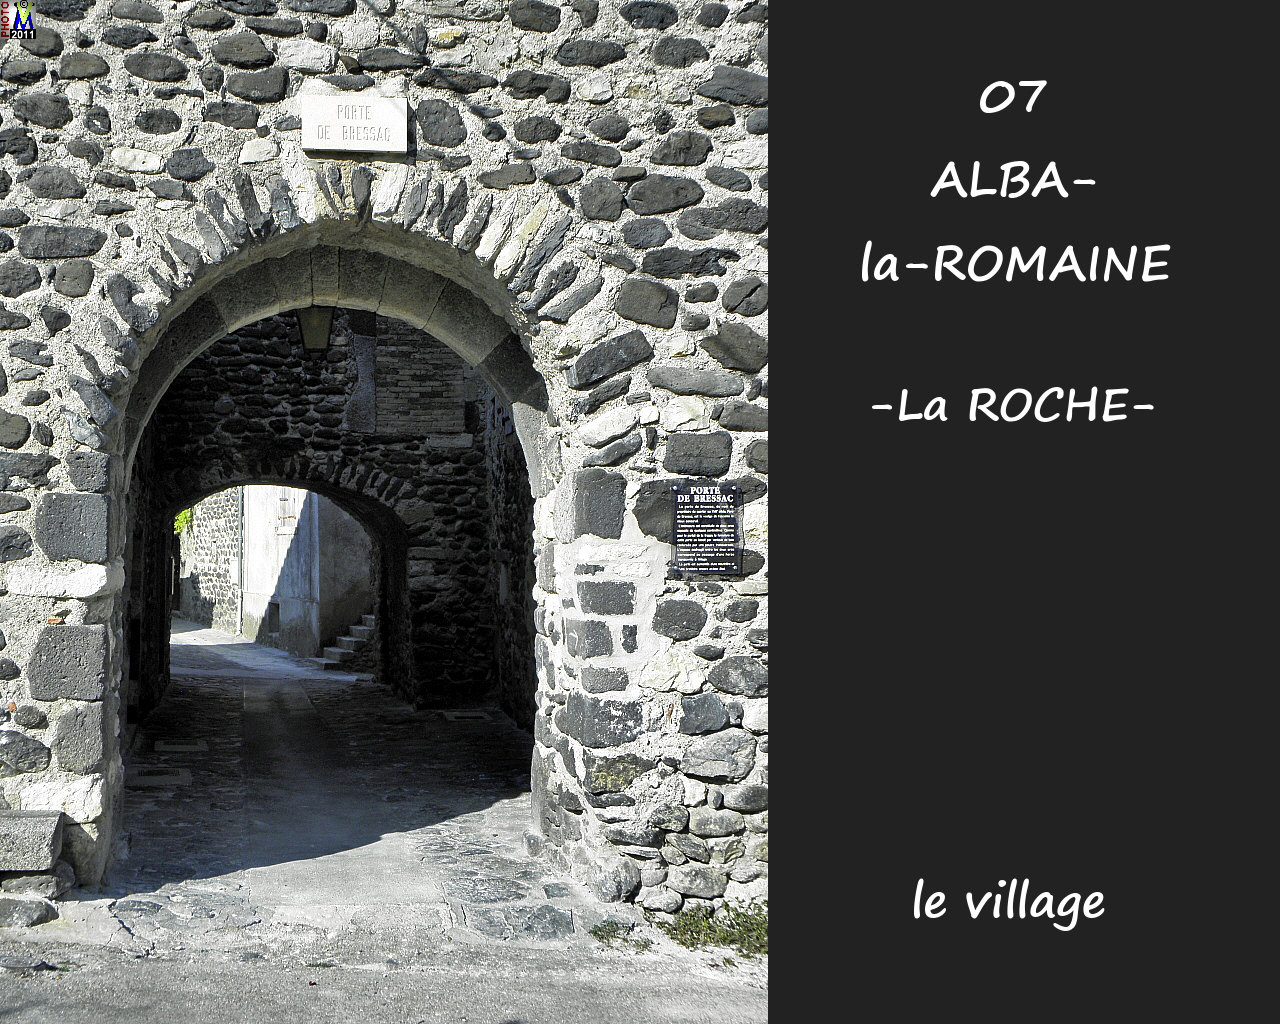 07ALBA-ROMAINEzROCHE_village_138.jpg